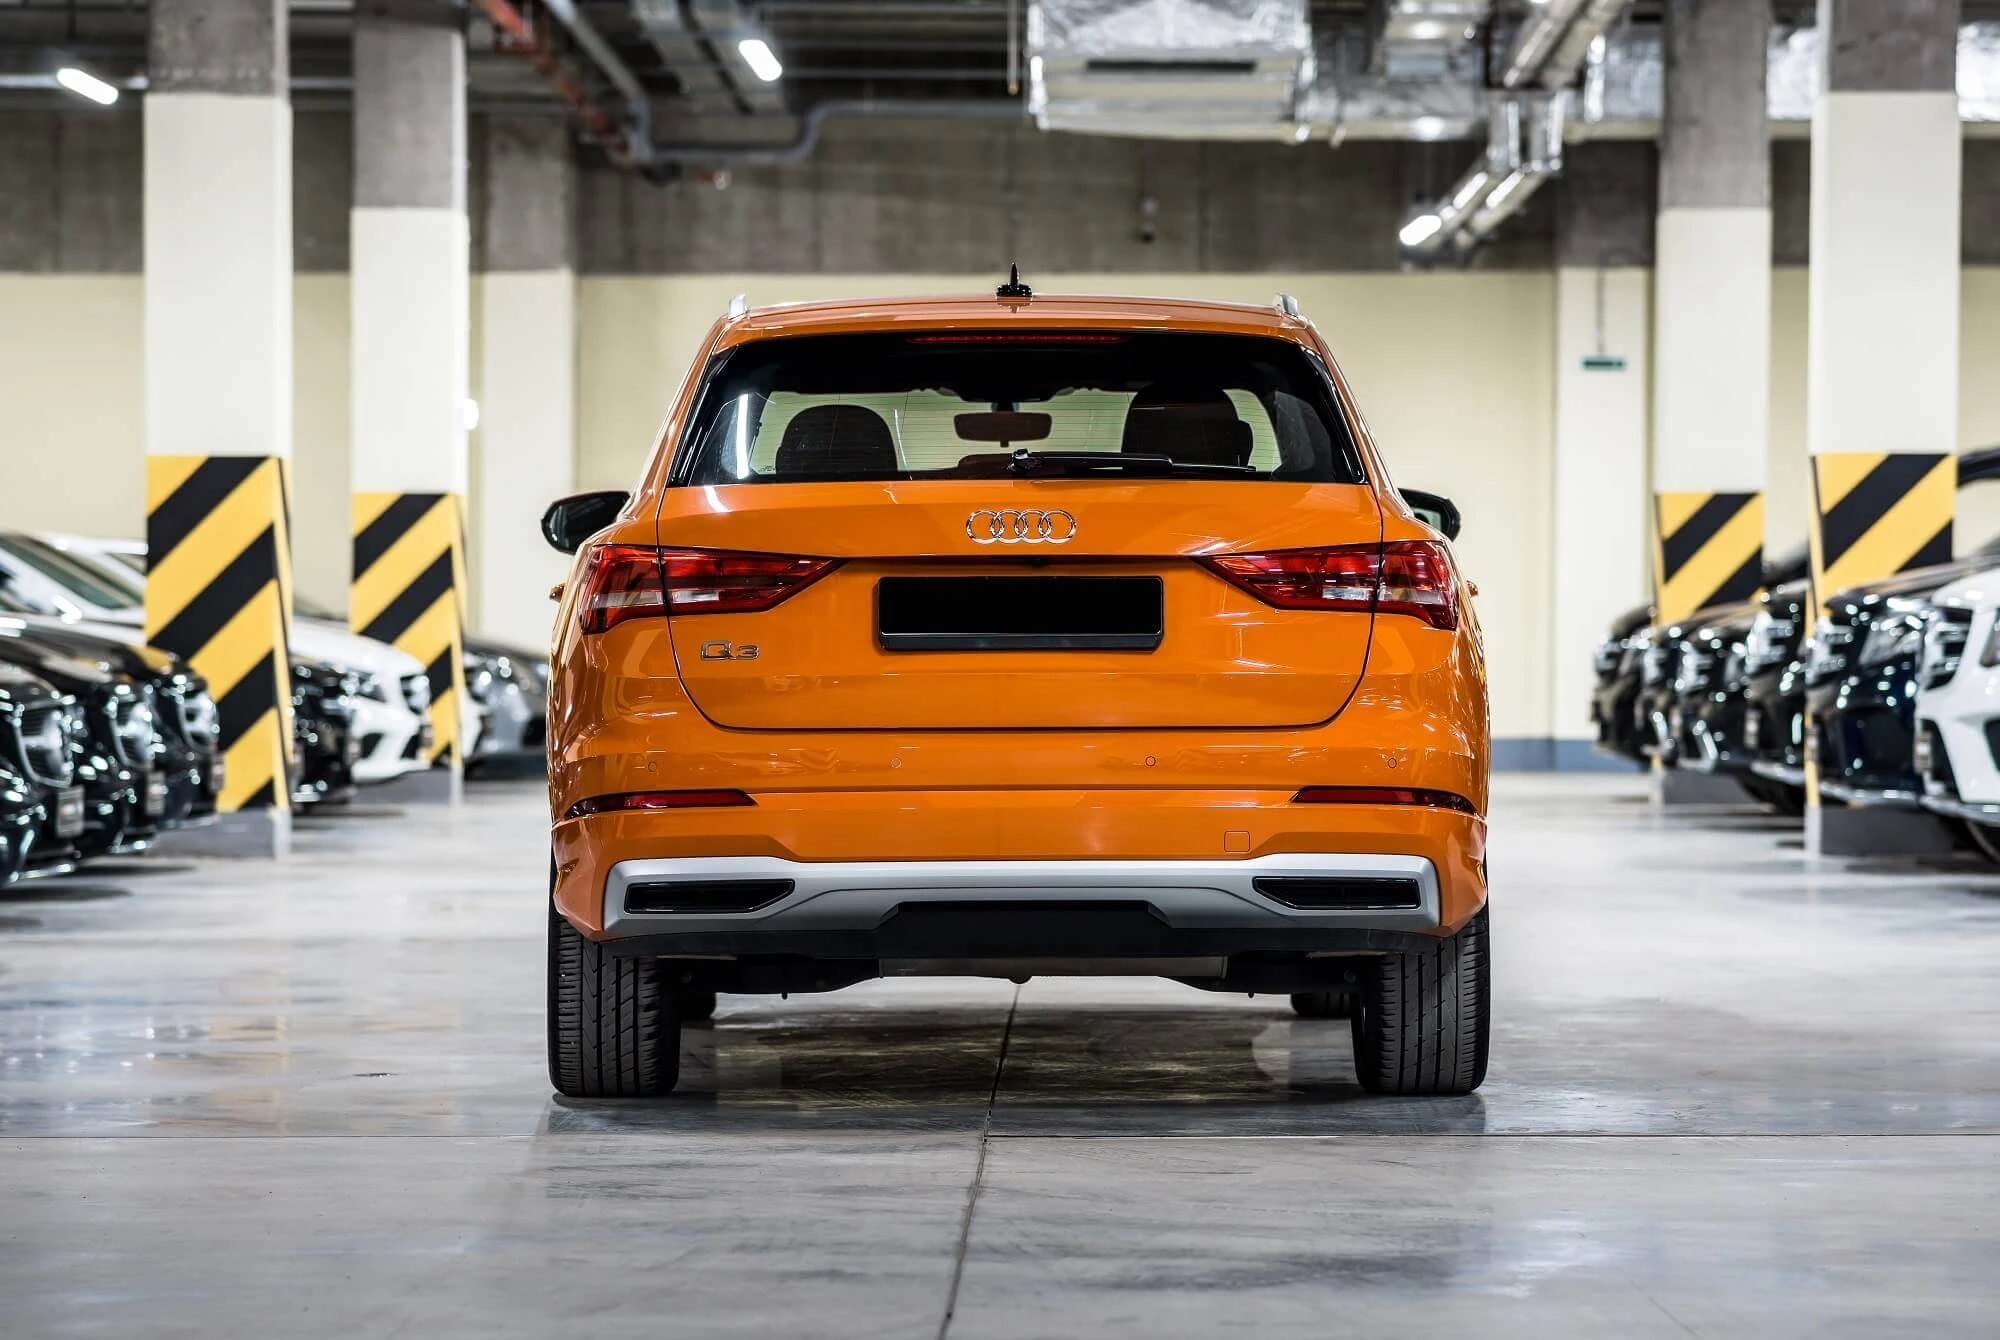 Audi Q3 Orange